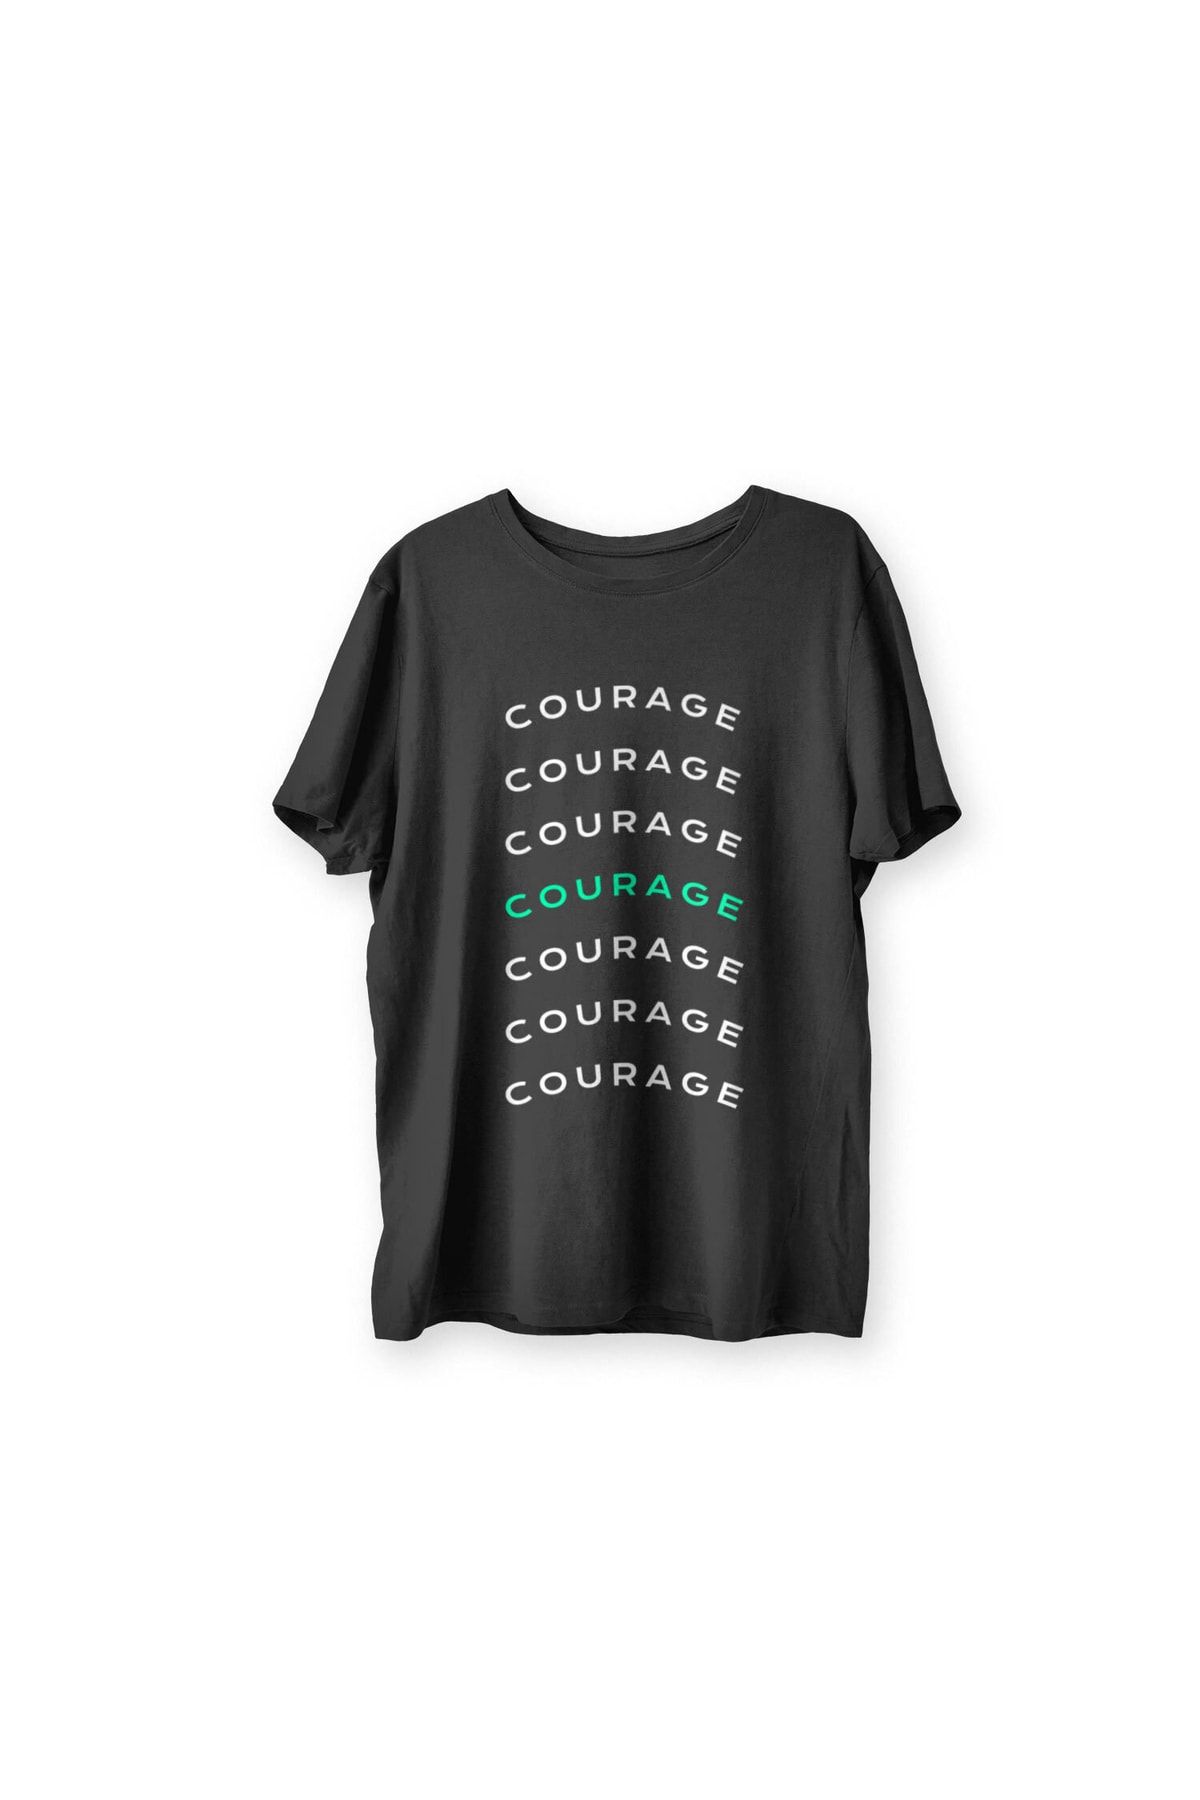 Renkli Garaj Courage Siyah T-shirt